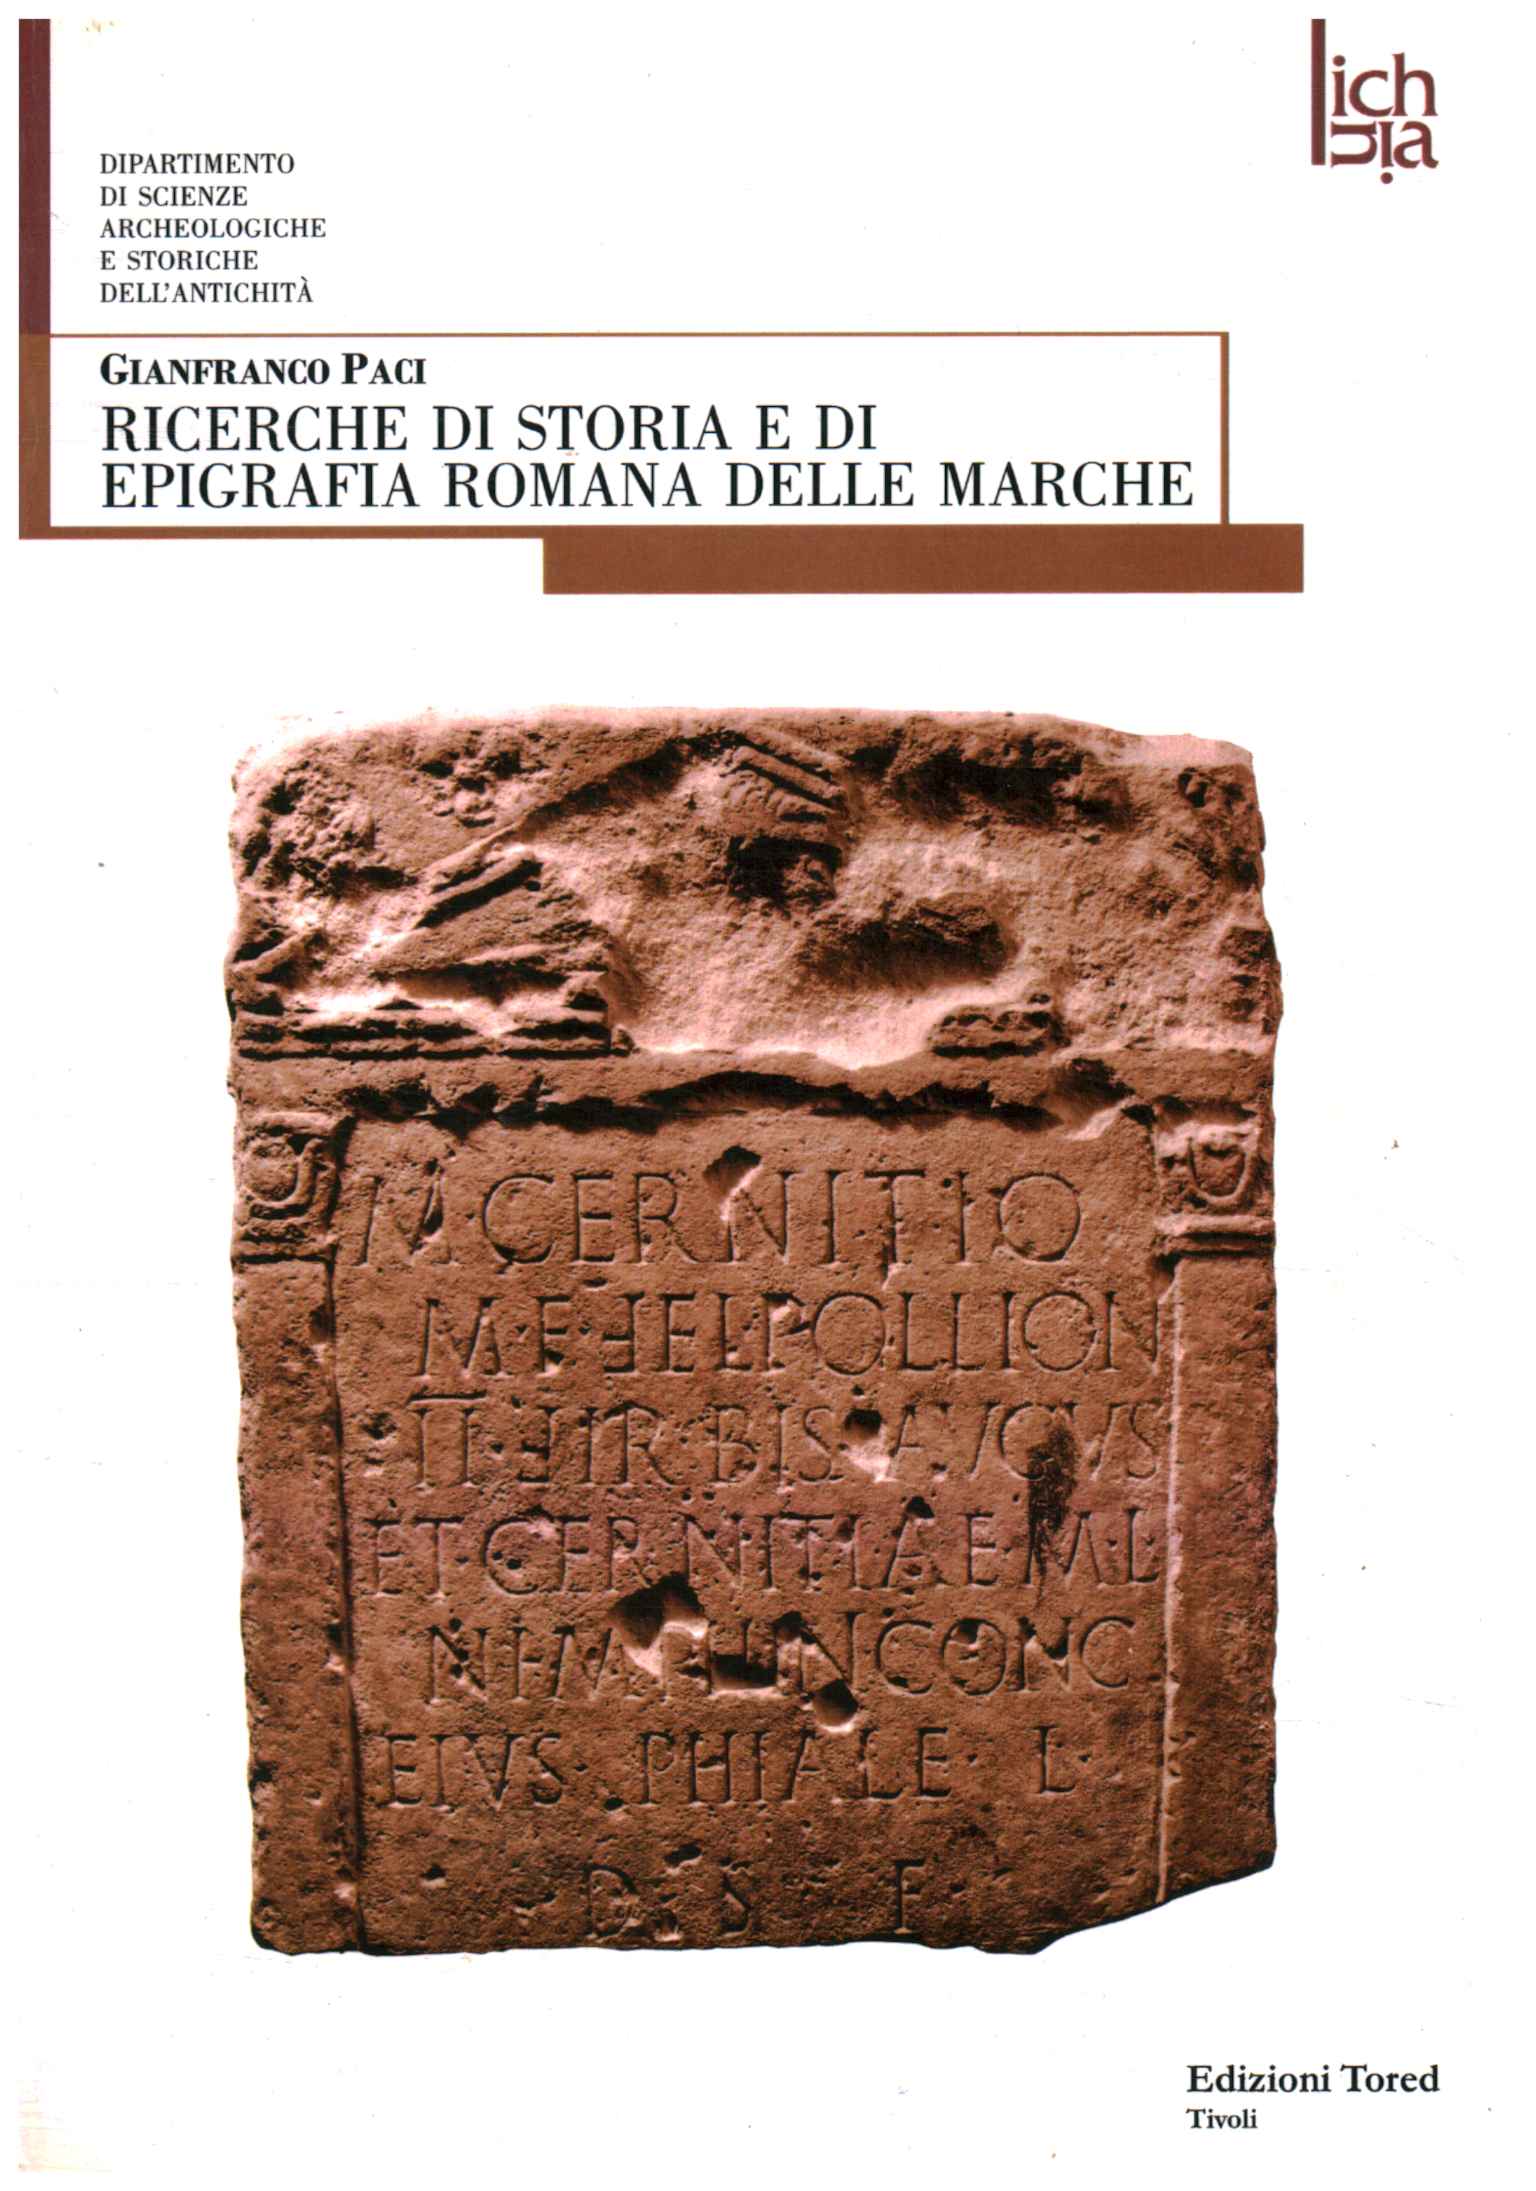 Investigación sobre historia y epigrafía de Roma.